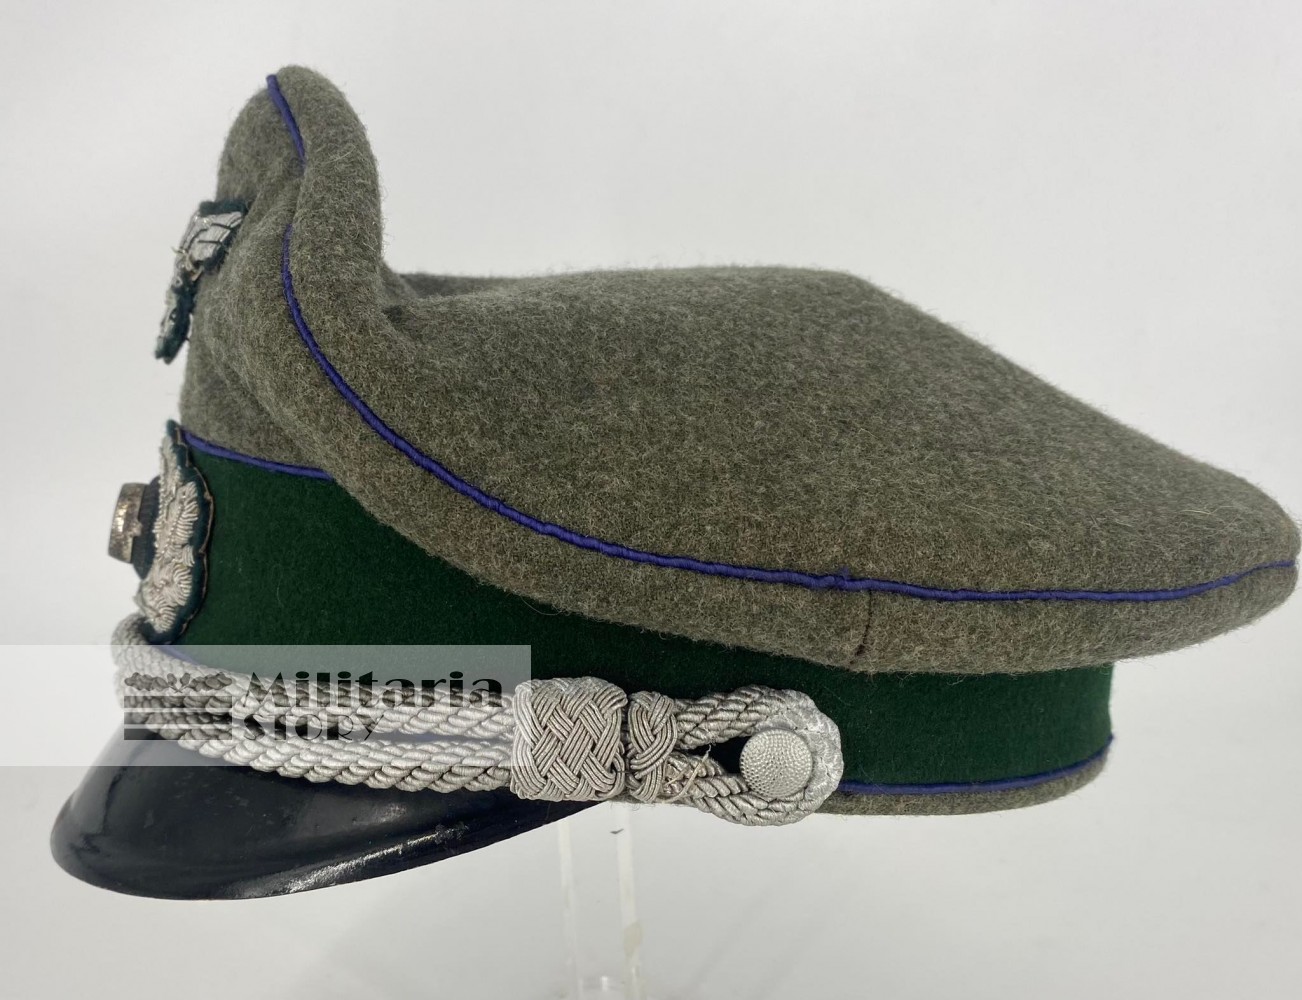 Heer Medical Officer visor cap - Heer Medical Officer visor cap: Third Reich Headgear